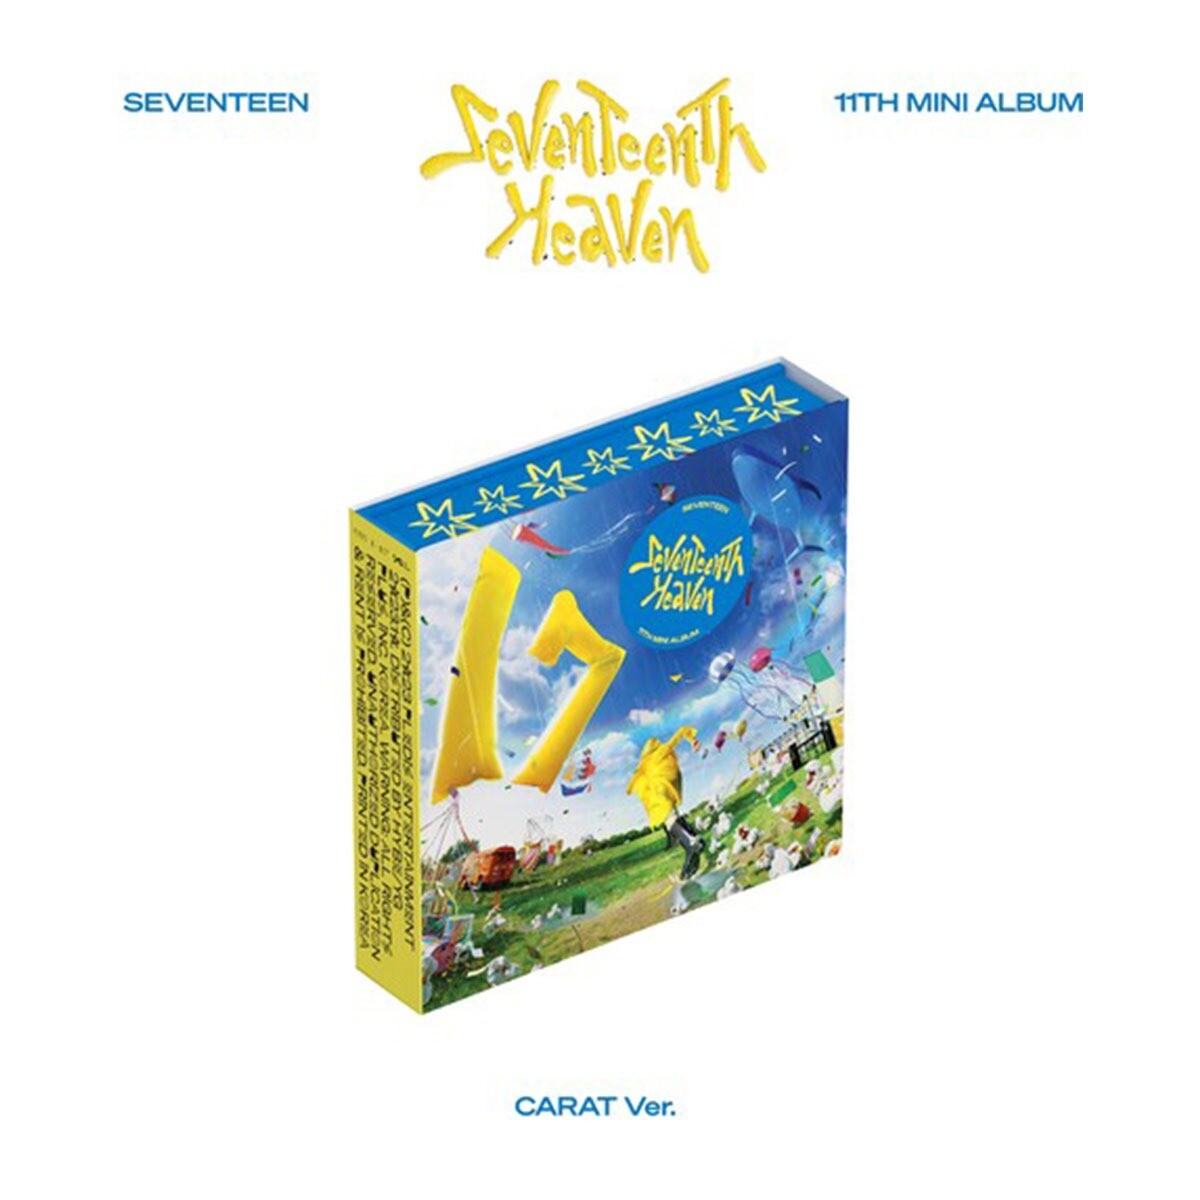 Seventeen / 11th Mini Album Seventeenth Heaven [carat Ver.] Cd 